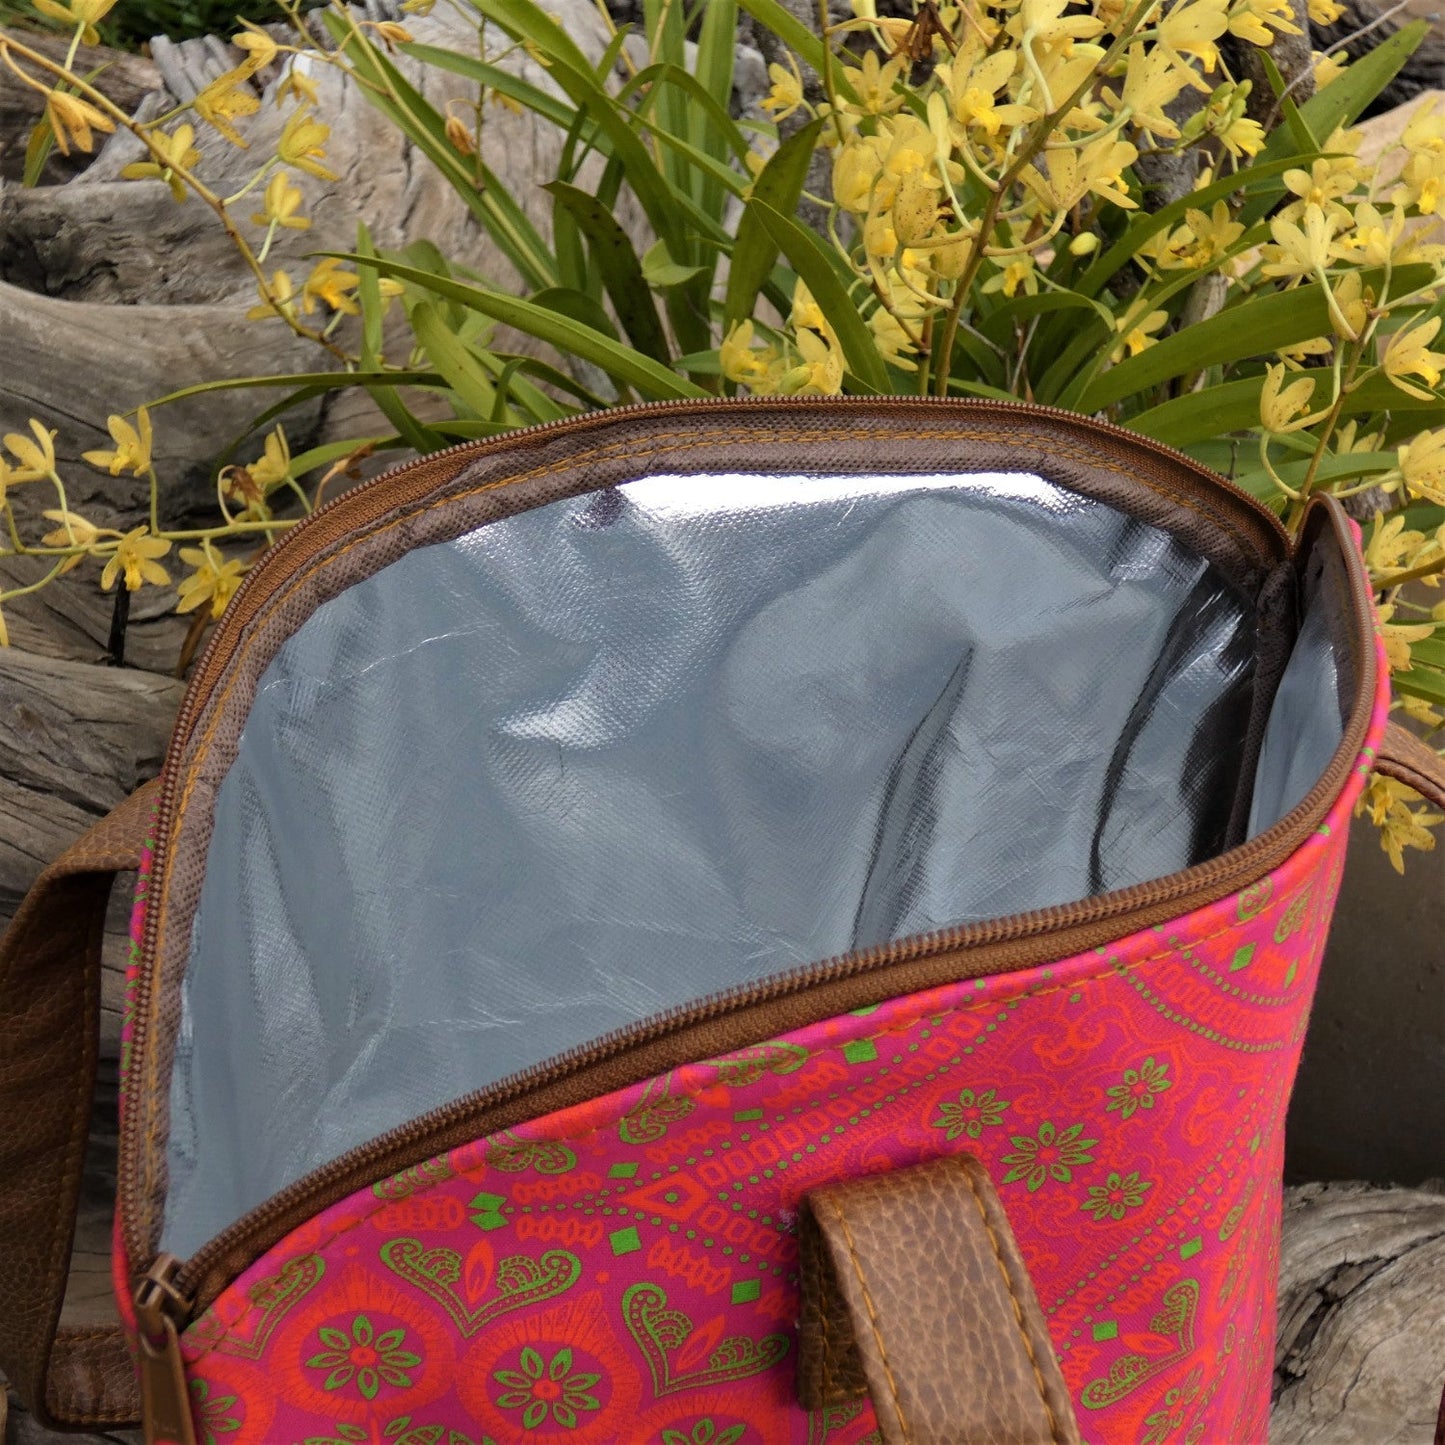 
                  
                    Shwe Shwe Cooler Bag by Handicraft Soul
                  
                